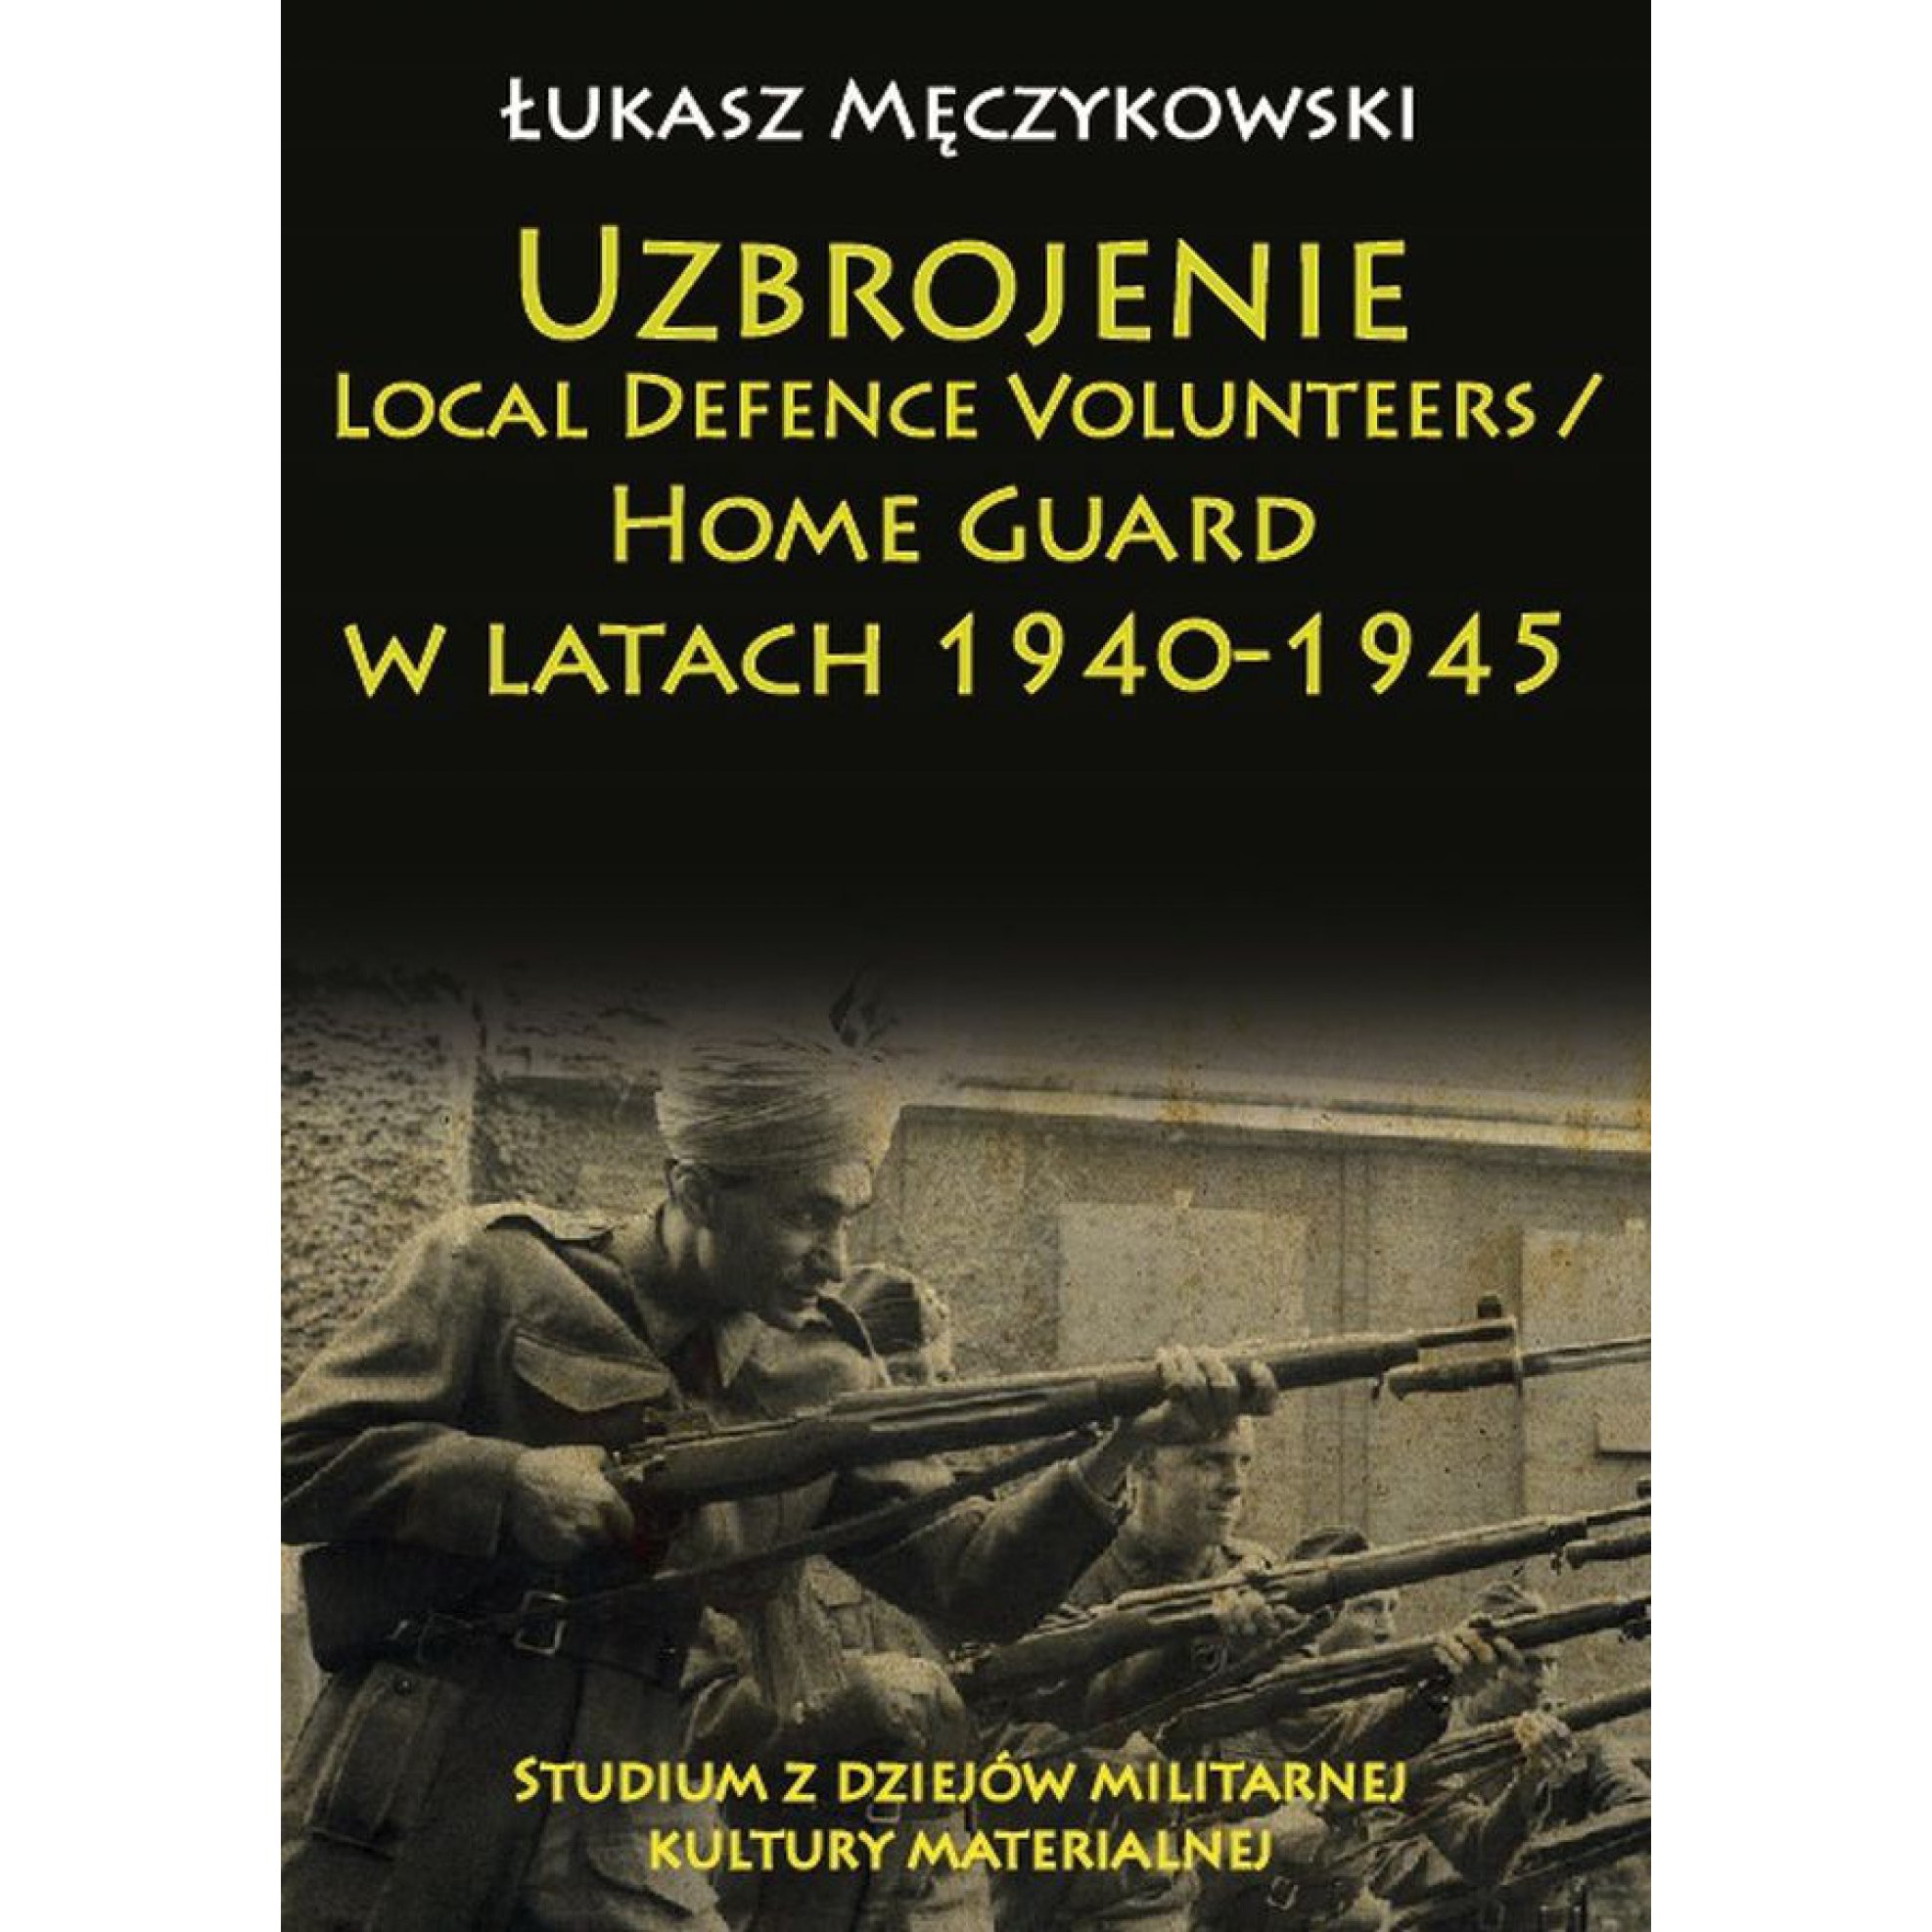 Uzbrojenie Local Defence Volunteers / Home Guard w latach 1940-1945. Studium z dziejów militarnej kultury materialnej